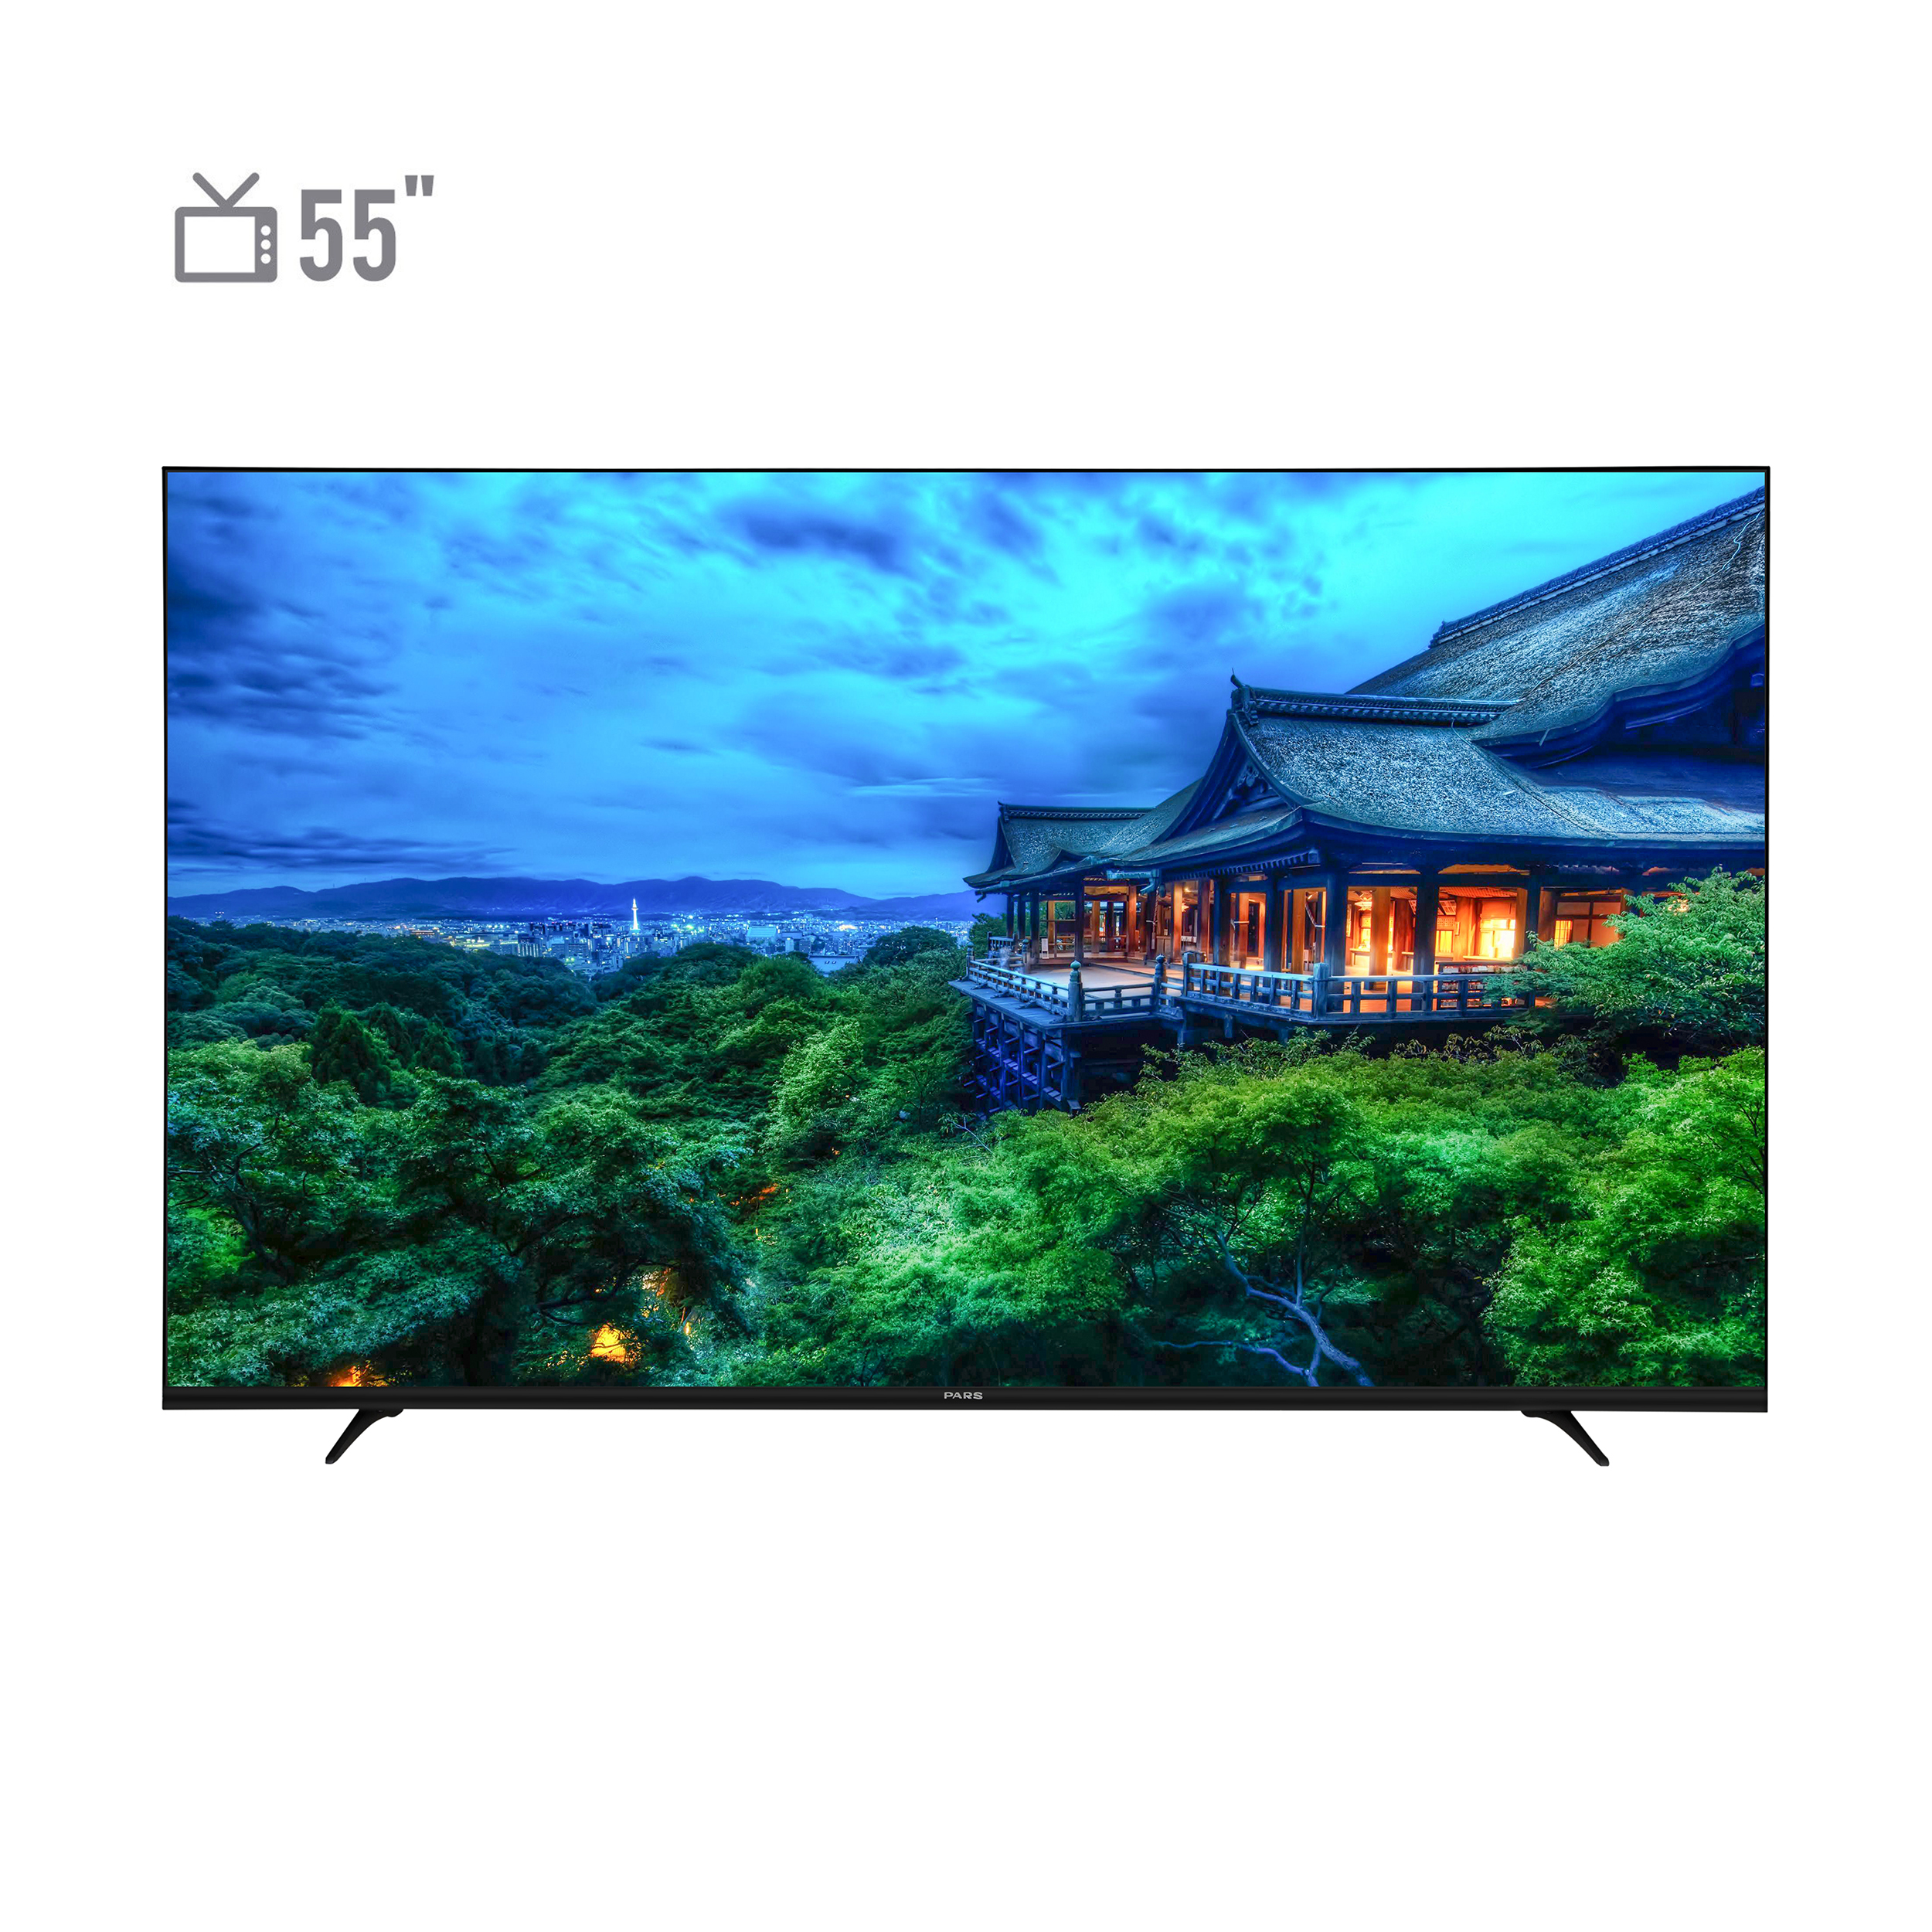 نکته خرید - قیمت روز تلویزیون هوشمند ال ای دی پارس مدل P55U600 سایز 55 اینچ خرید